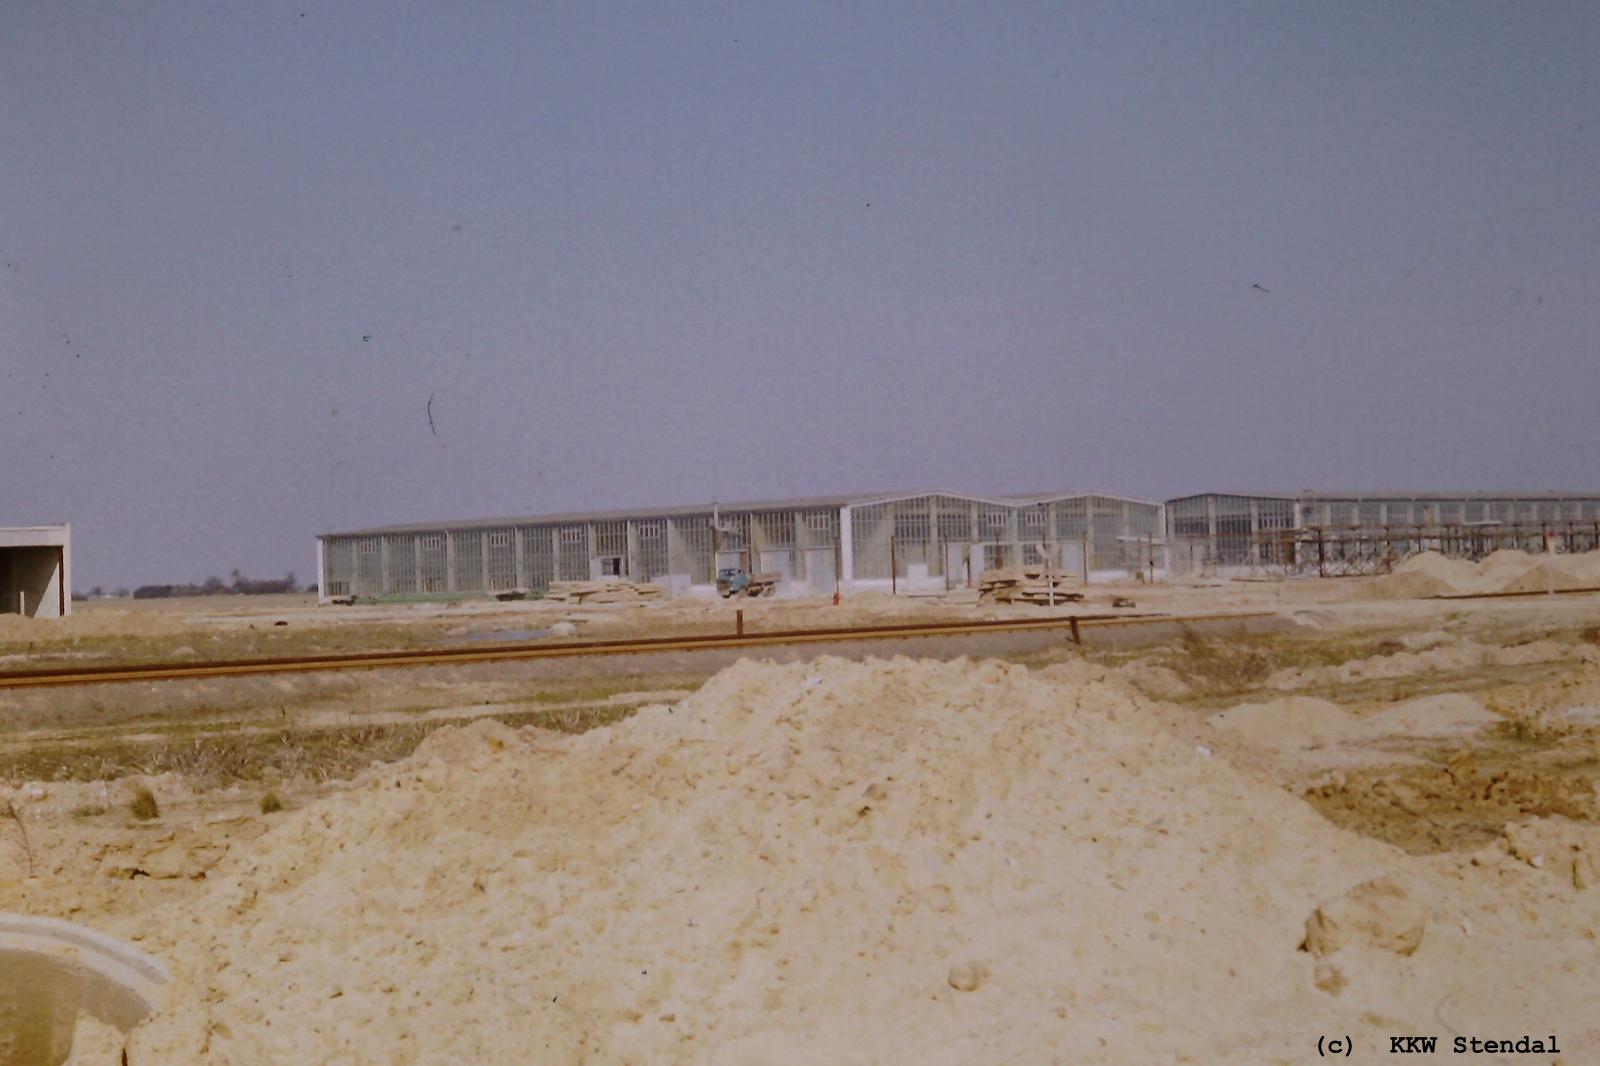  Baustellenfoto 1979, Hallen für Importausrüstungen 